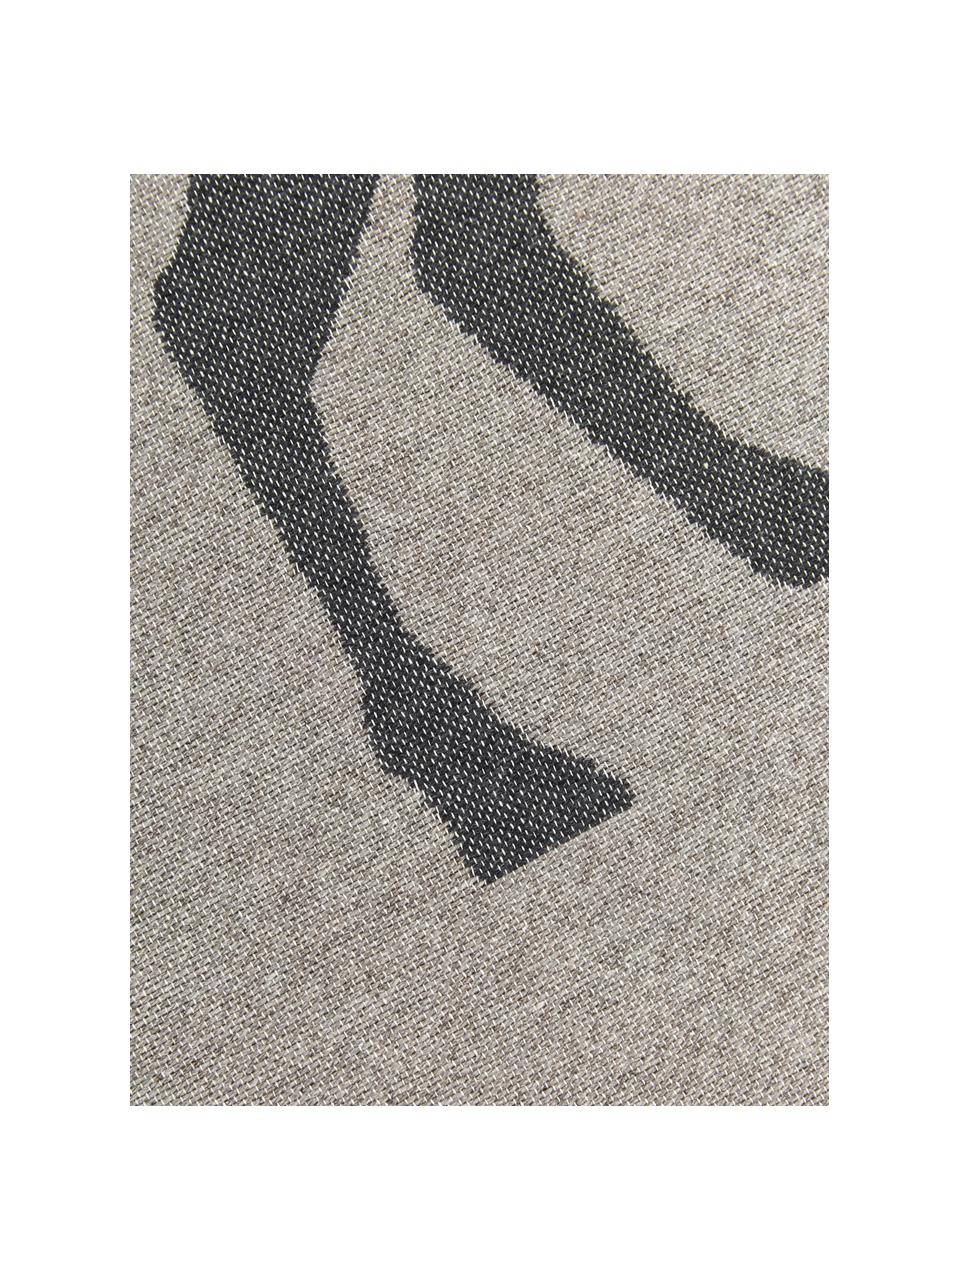 Kleiner Teppich Goliath mit Fransen und Hirschmotiv, 100% recycelte Baumwolle, Grau, Dunkelgrau, Beige, B 70 x L 120 cm (Grösse XS)